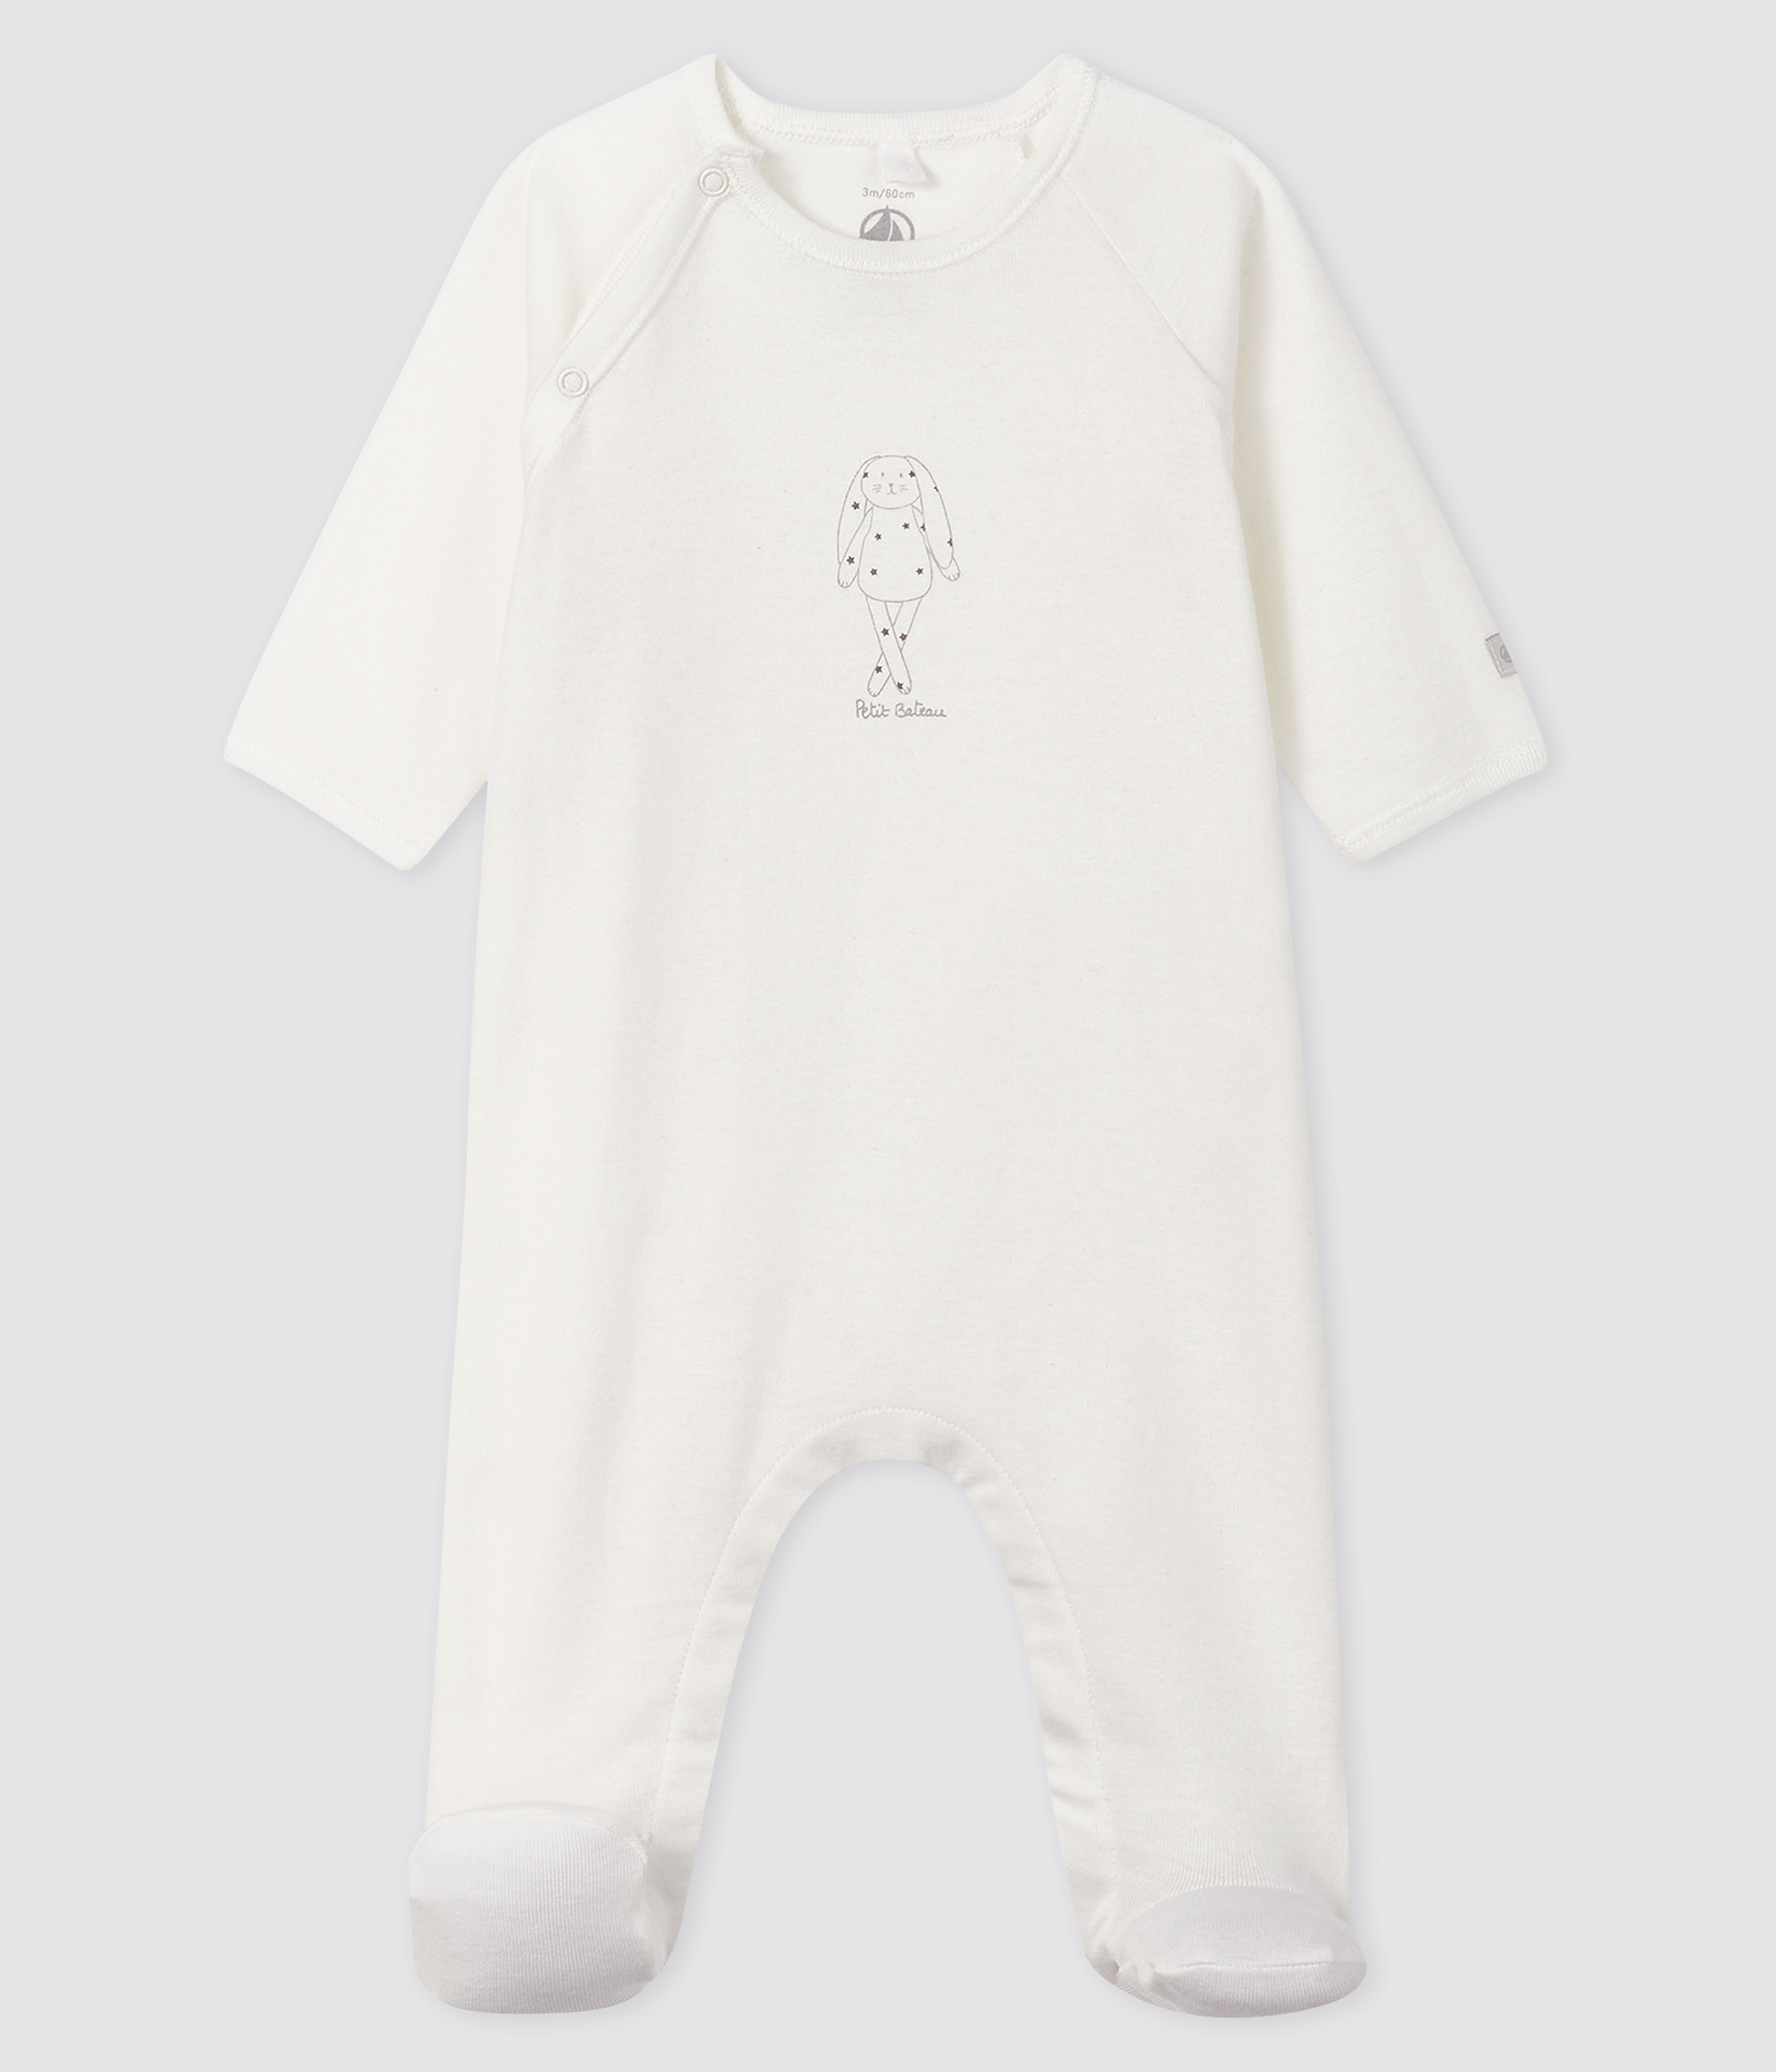 Naughtees clothing Strampler Hergestellt in Australien Weiß Baumwolle Baby Grow 